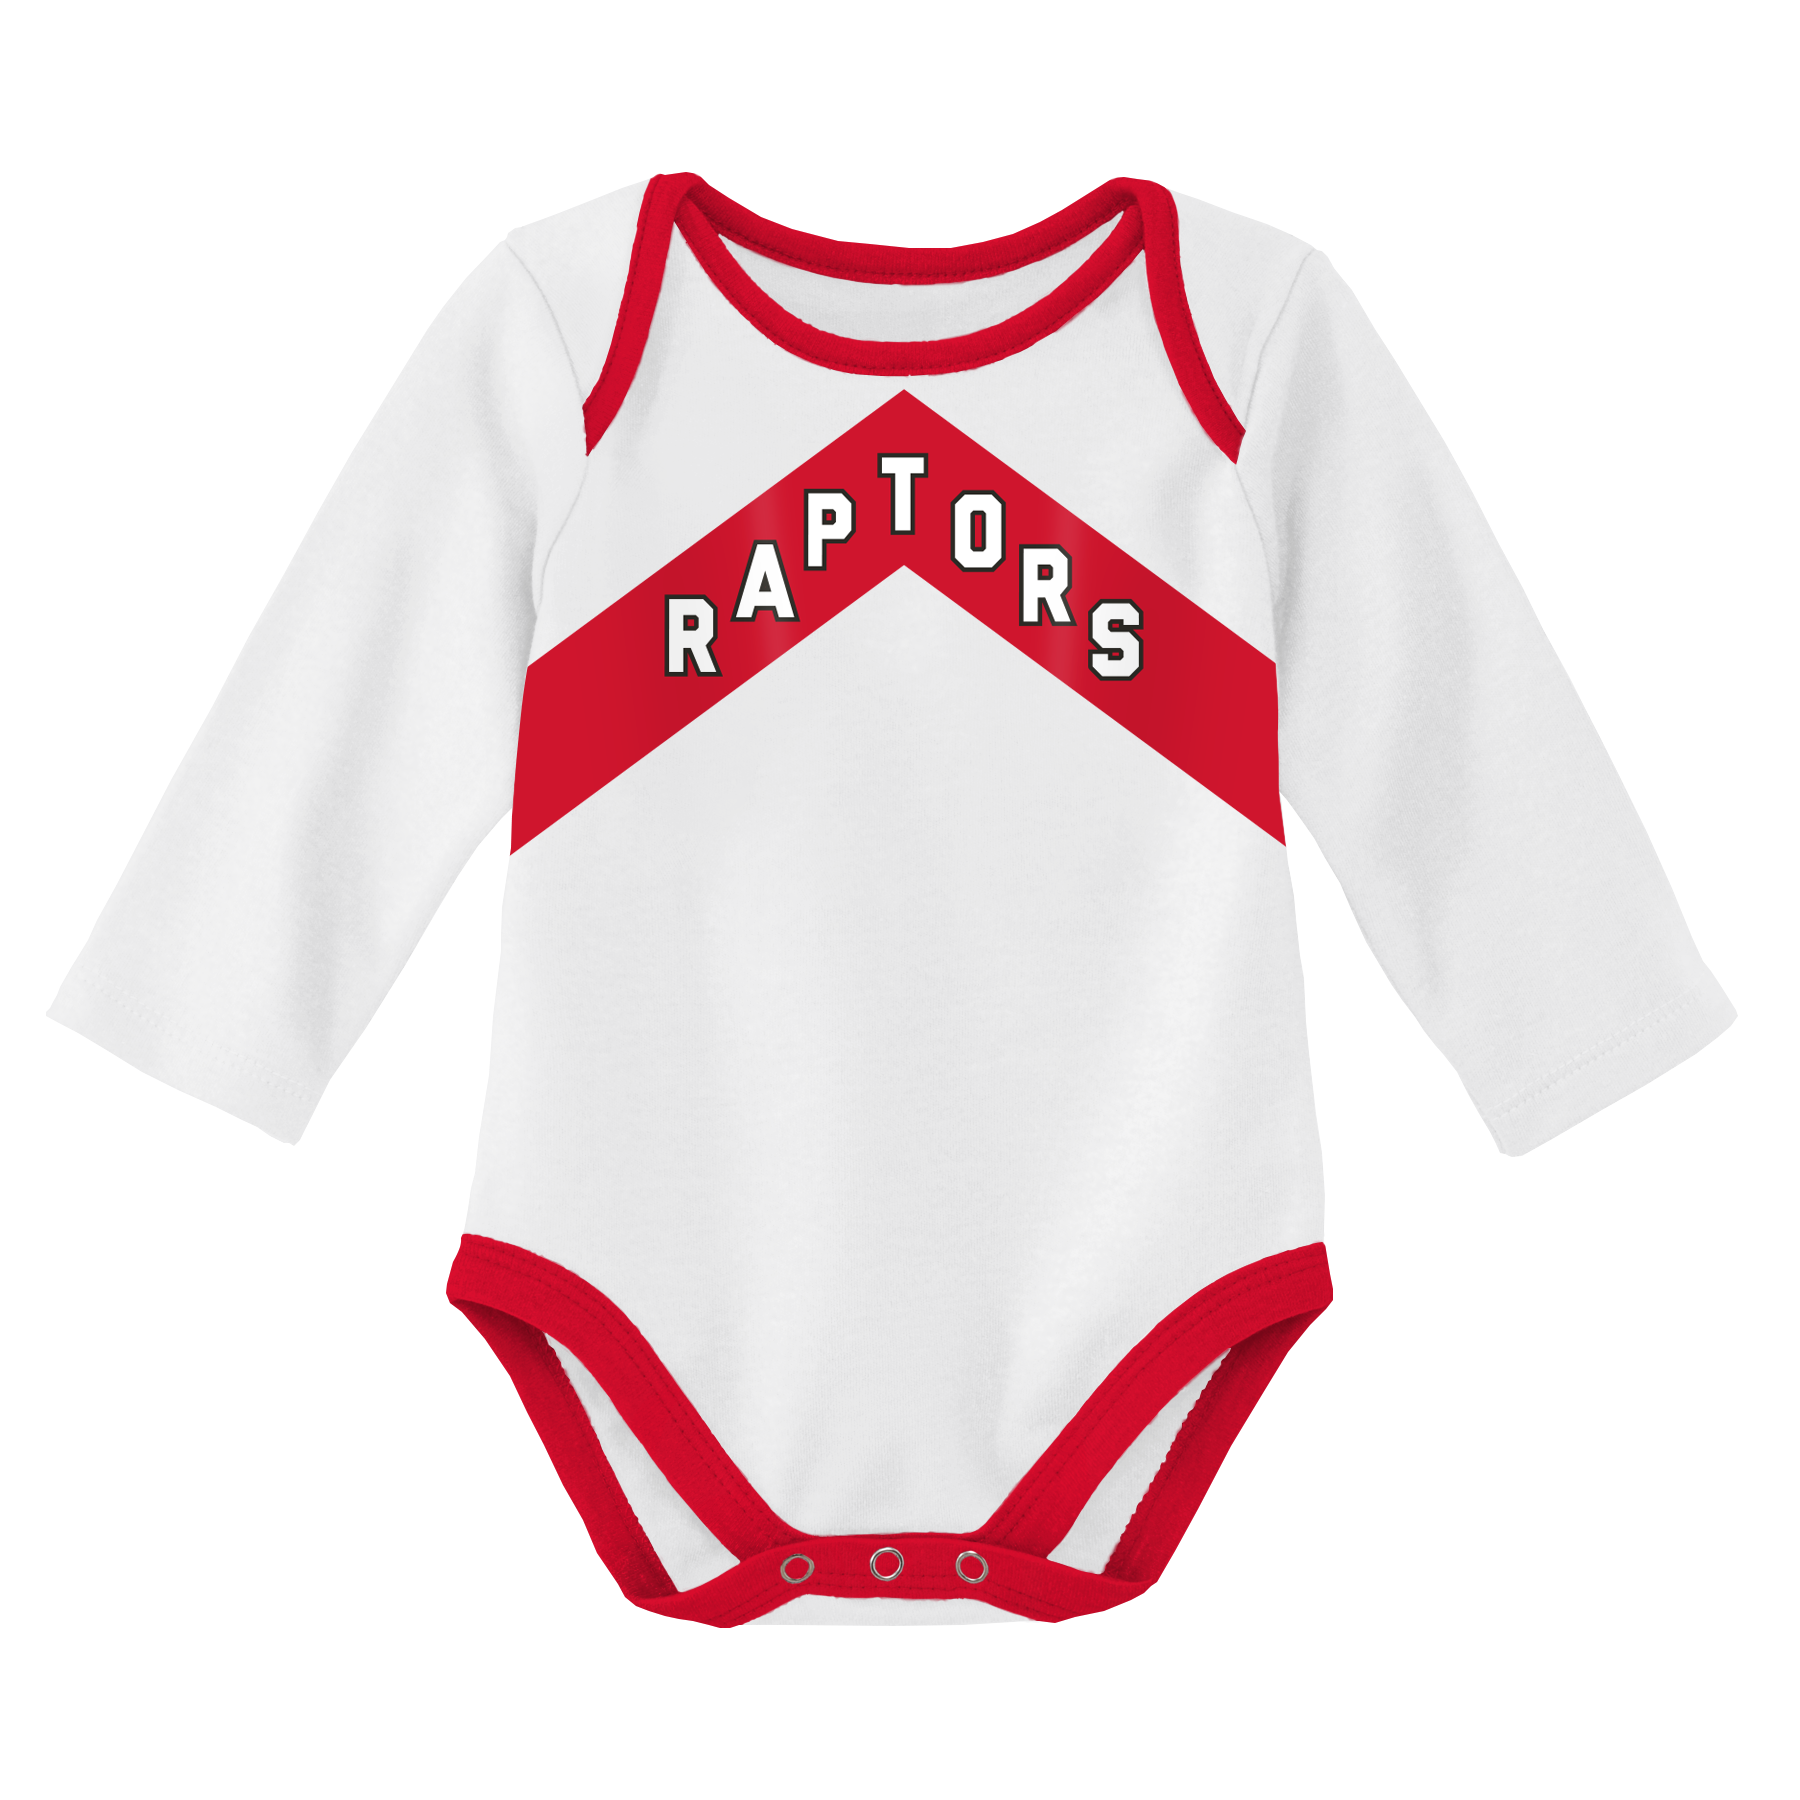 Raptors NBA Infant 3 Piece Creeper Set